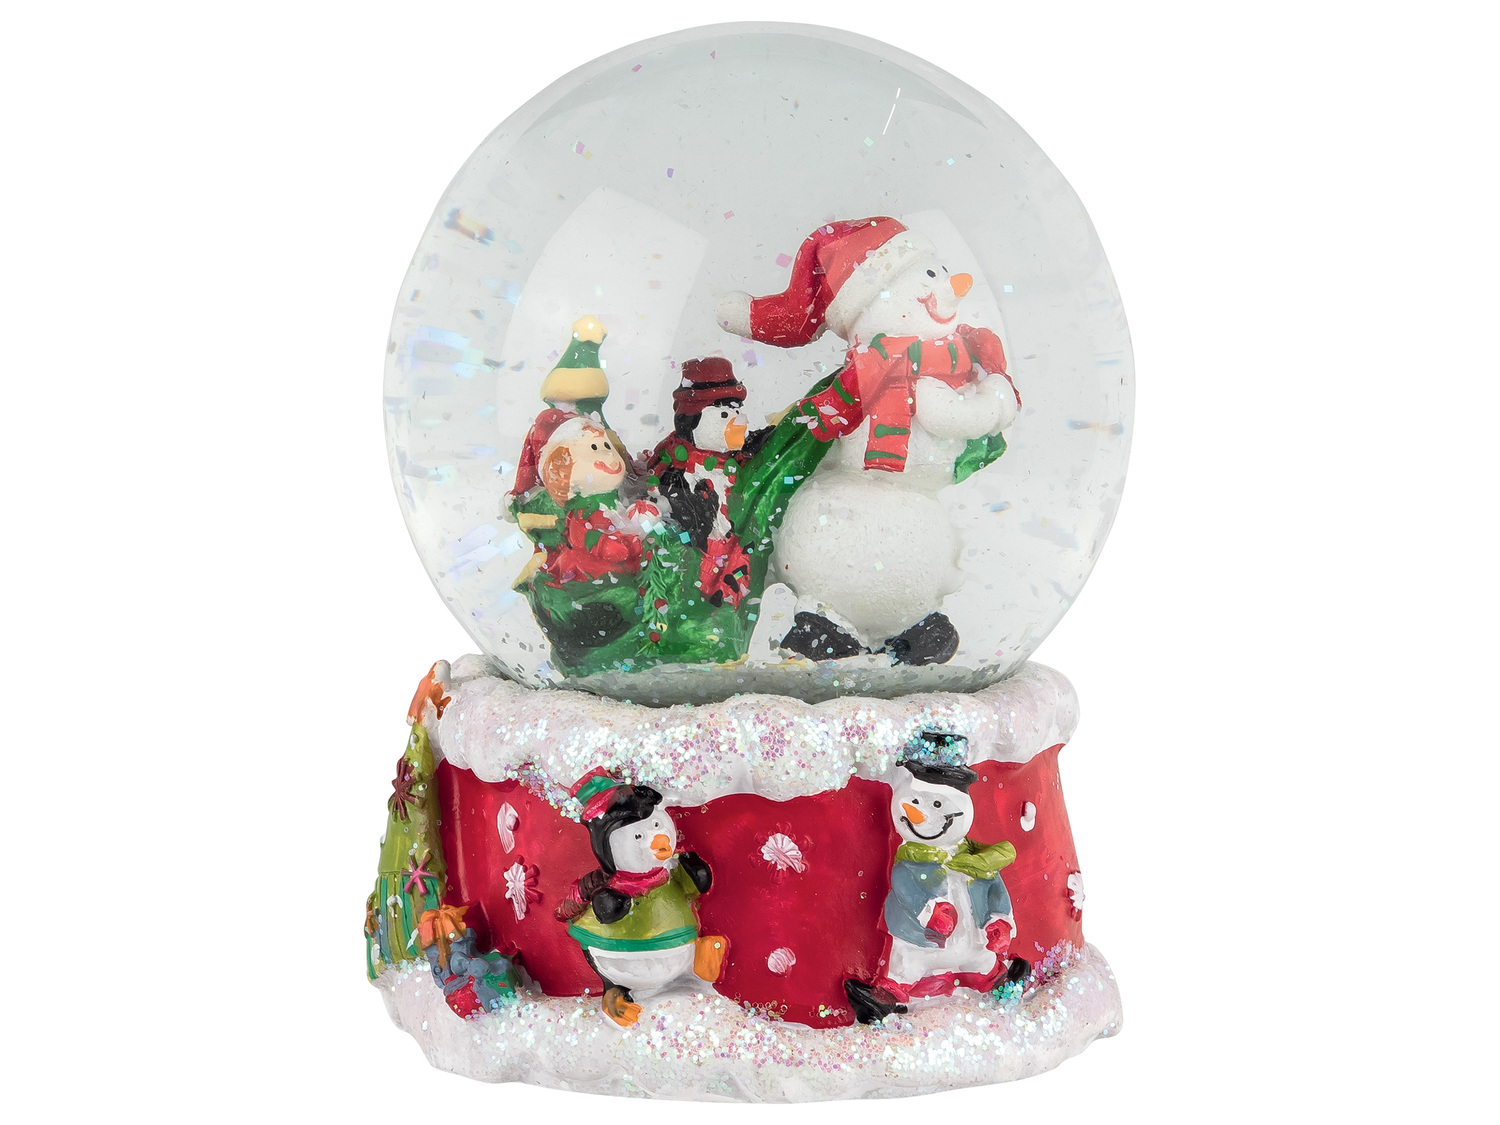 Boule à neige musicale , le prix 8.99 € 
- Au choix : Frosty the Snowman ou ...